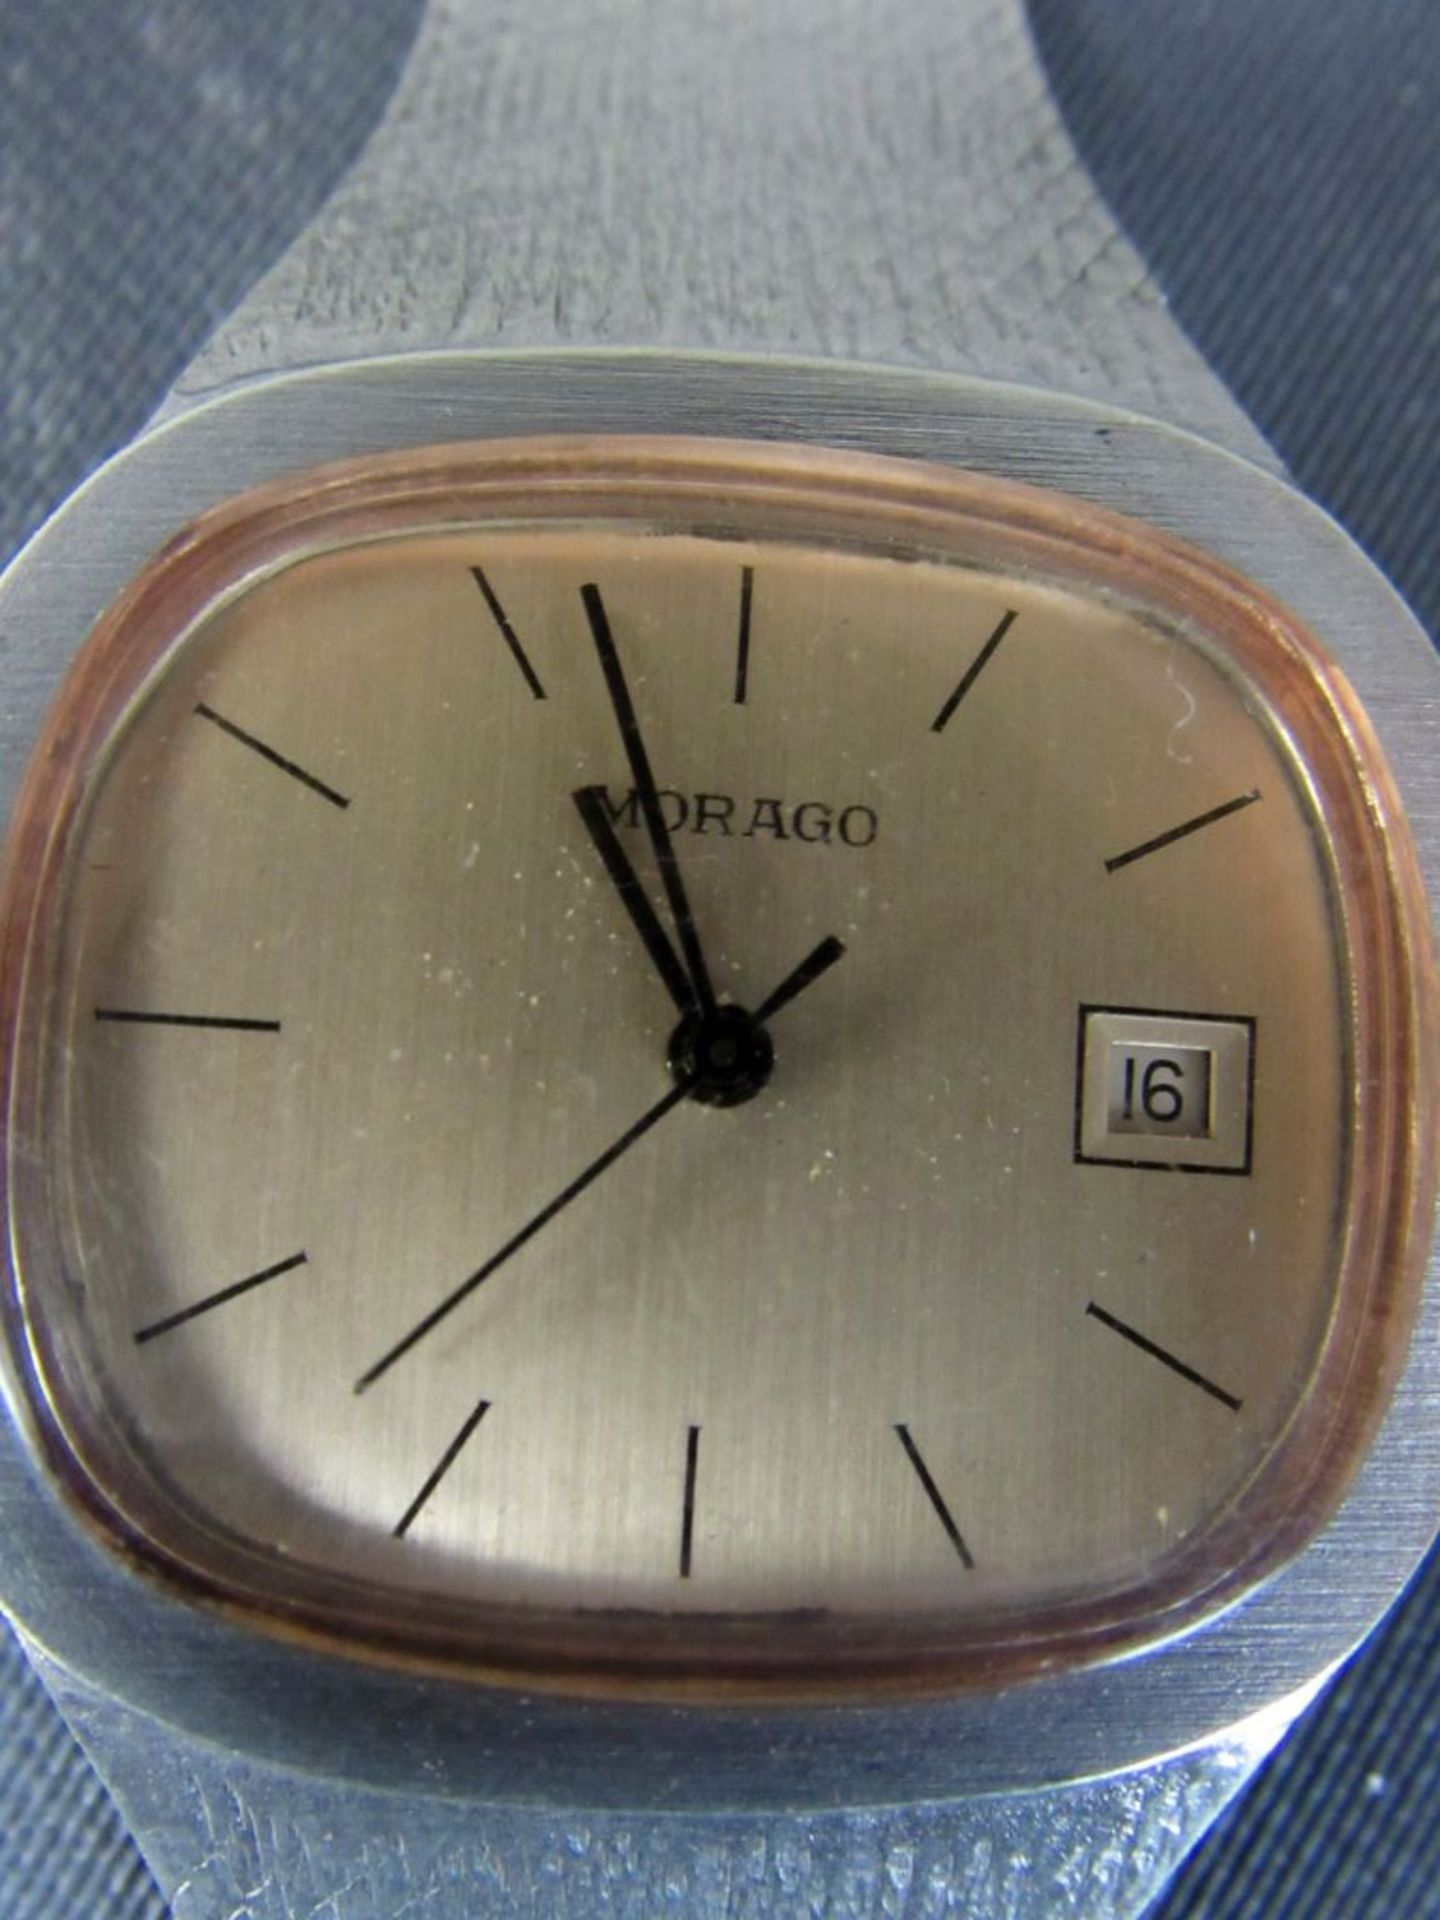 Damen Uhr 800er Silber Morago läuft an - Bild 5 aus 10